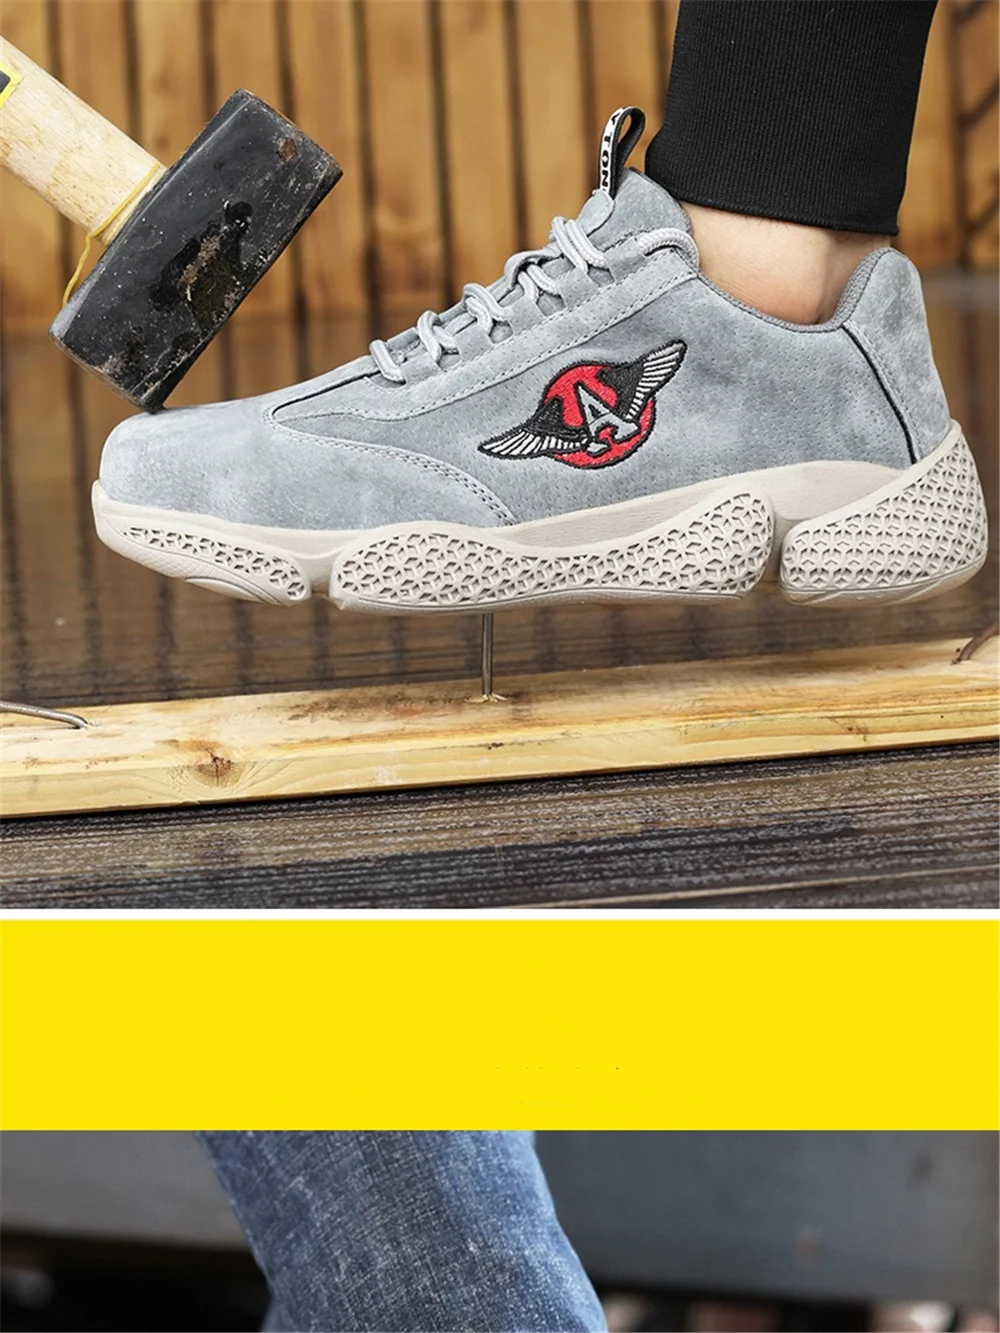 Dewbest/Большие размеры 36-47, стальная безопасная обувь, мужская легкая дышащая рабочая обувь, защитные ботинки для мужчин, анти-прокол